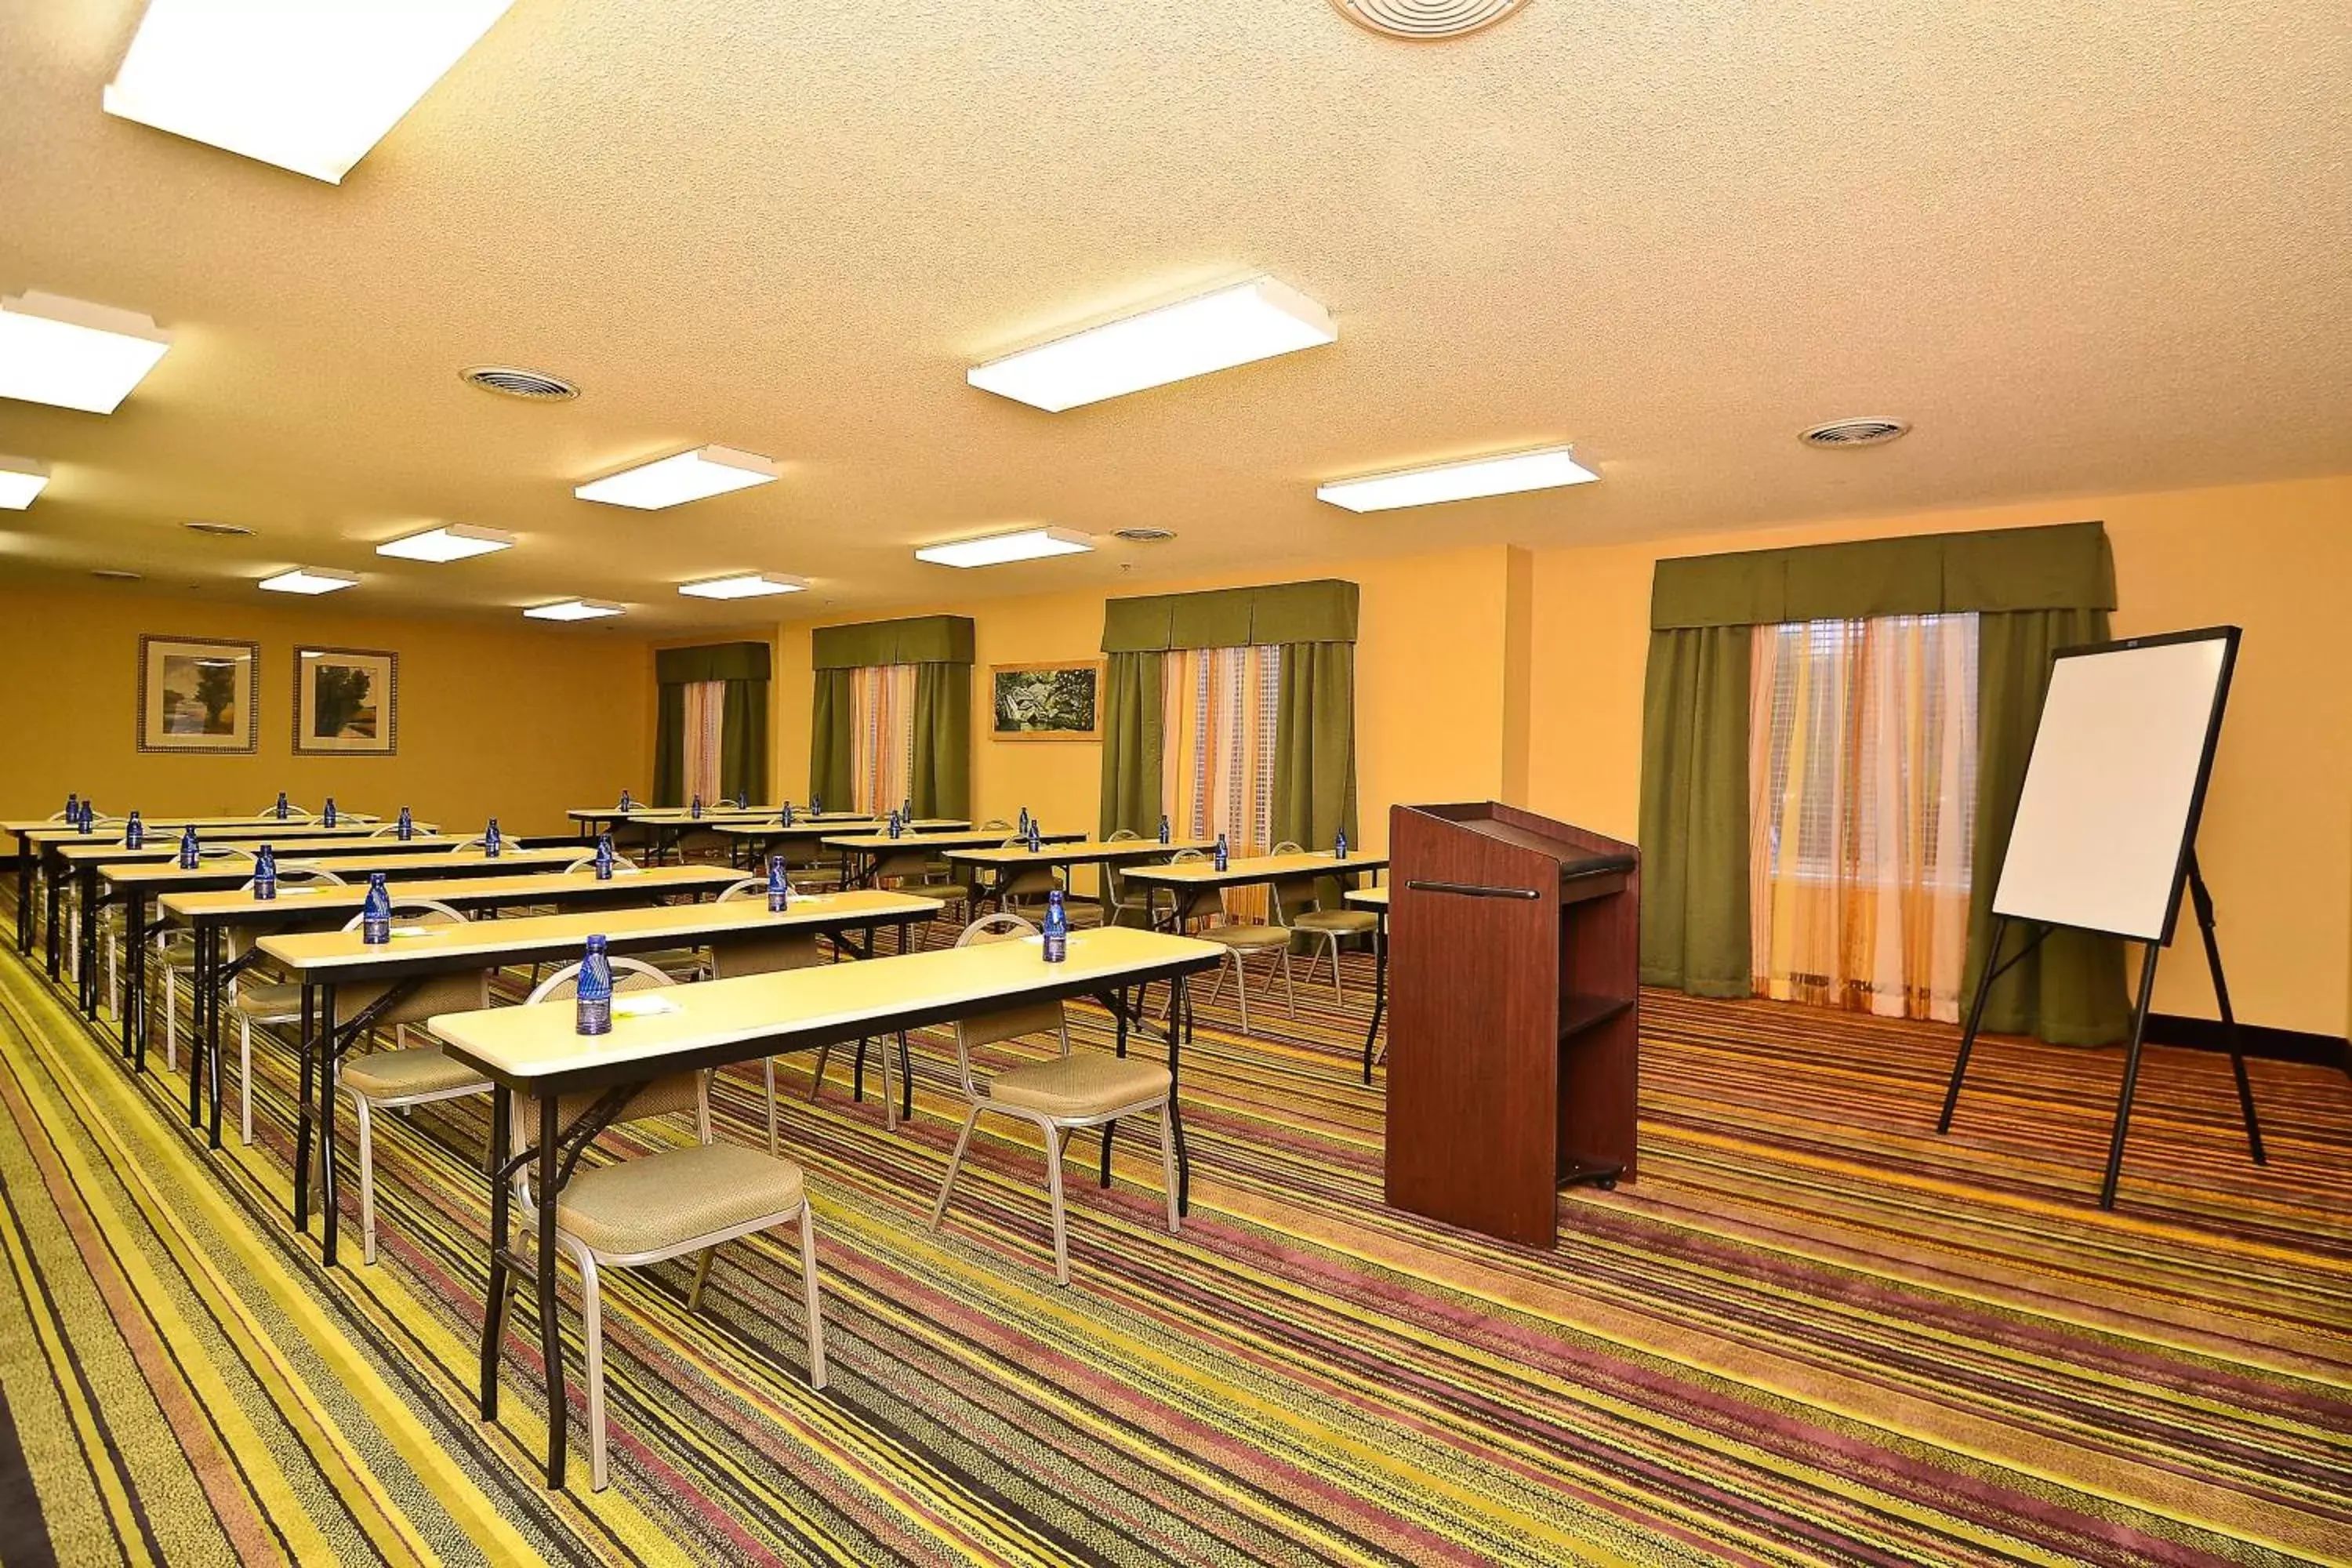 Meeting/conference room in Fairfield Inn & Suites Cherokee